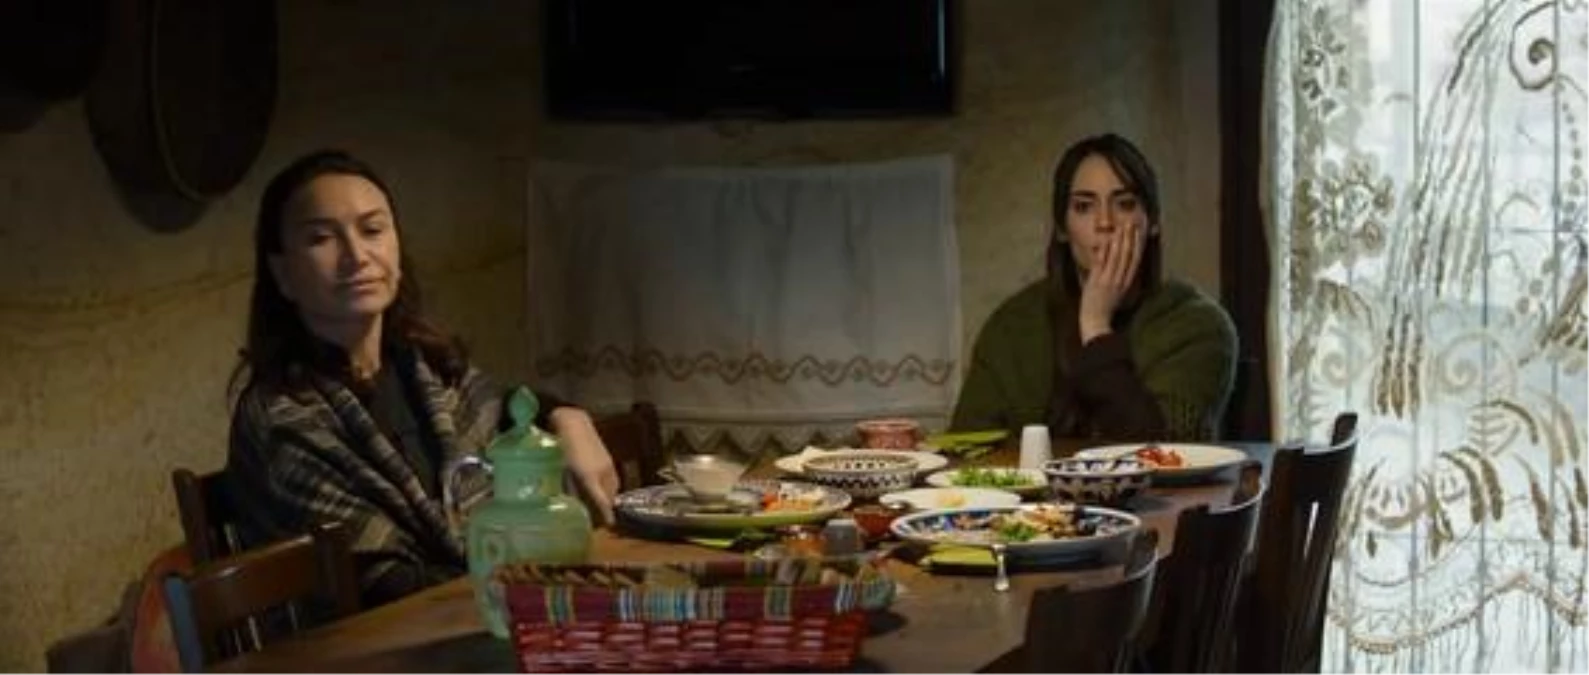 Kış Uykusu (Winter Sleep) - Trailer [hd] (2014) Nuri Bilge Ceylan